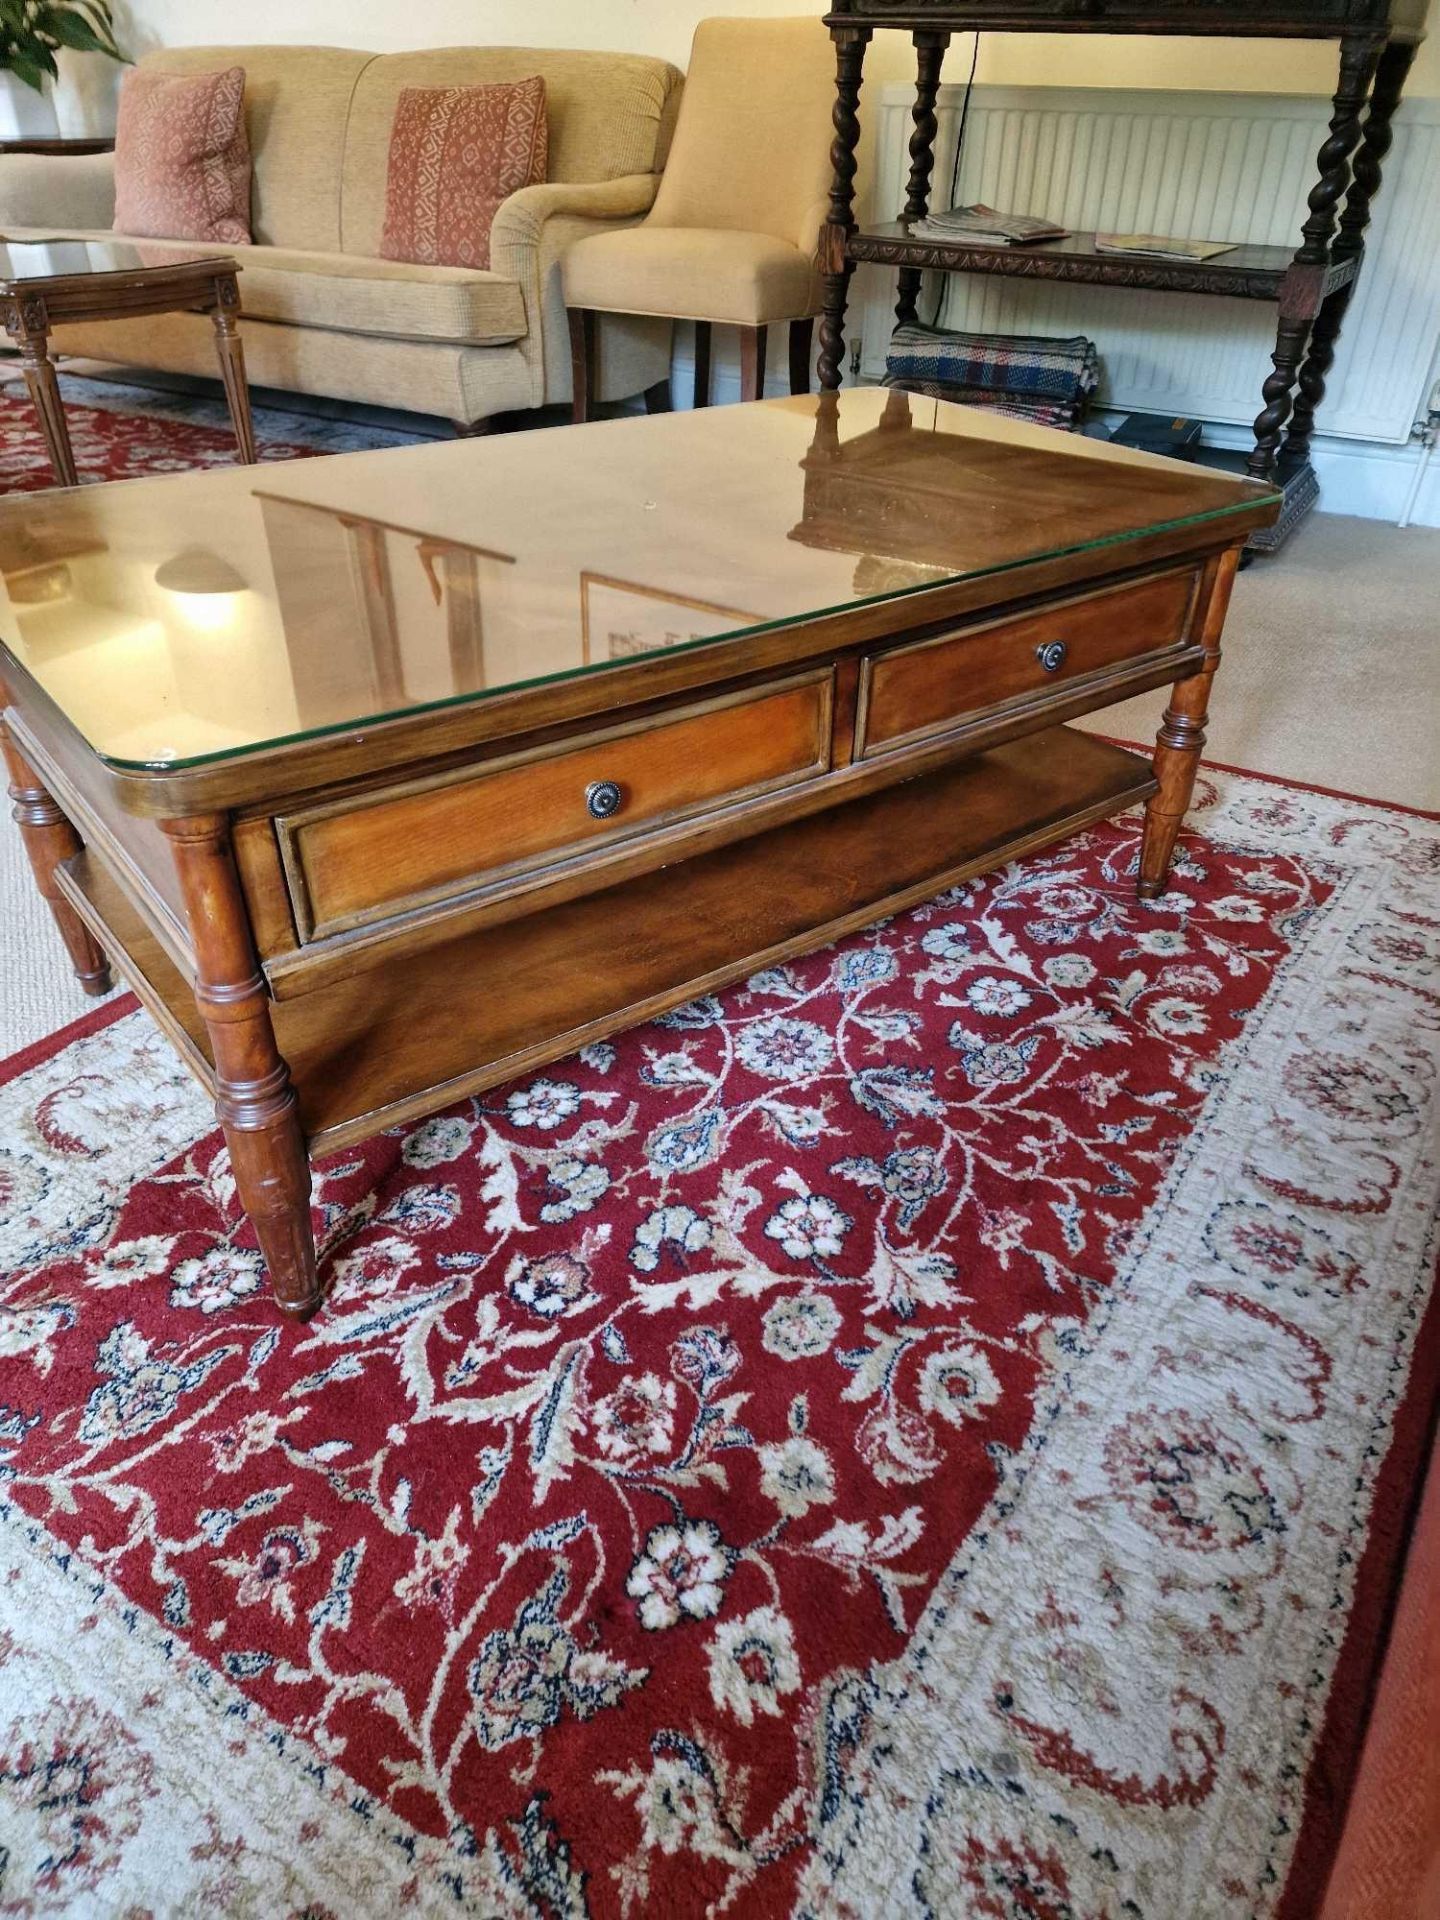 A Regency Style Cherry Wood Two Drawer Coffee Table With Undershelf 110 x 60 x 46cm - Bild 3 aus 3